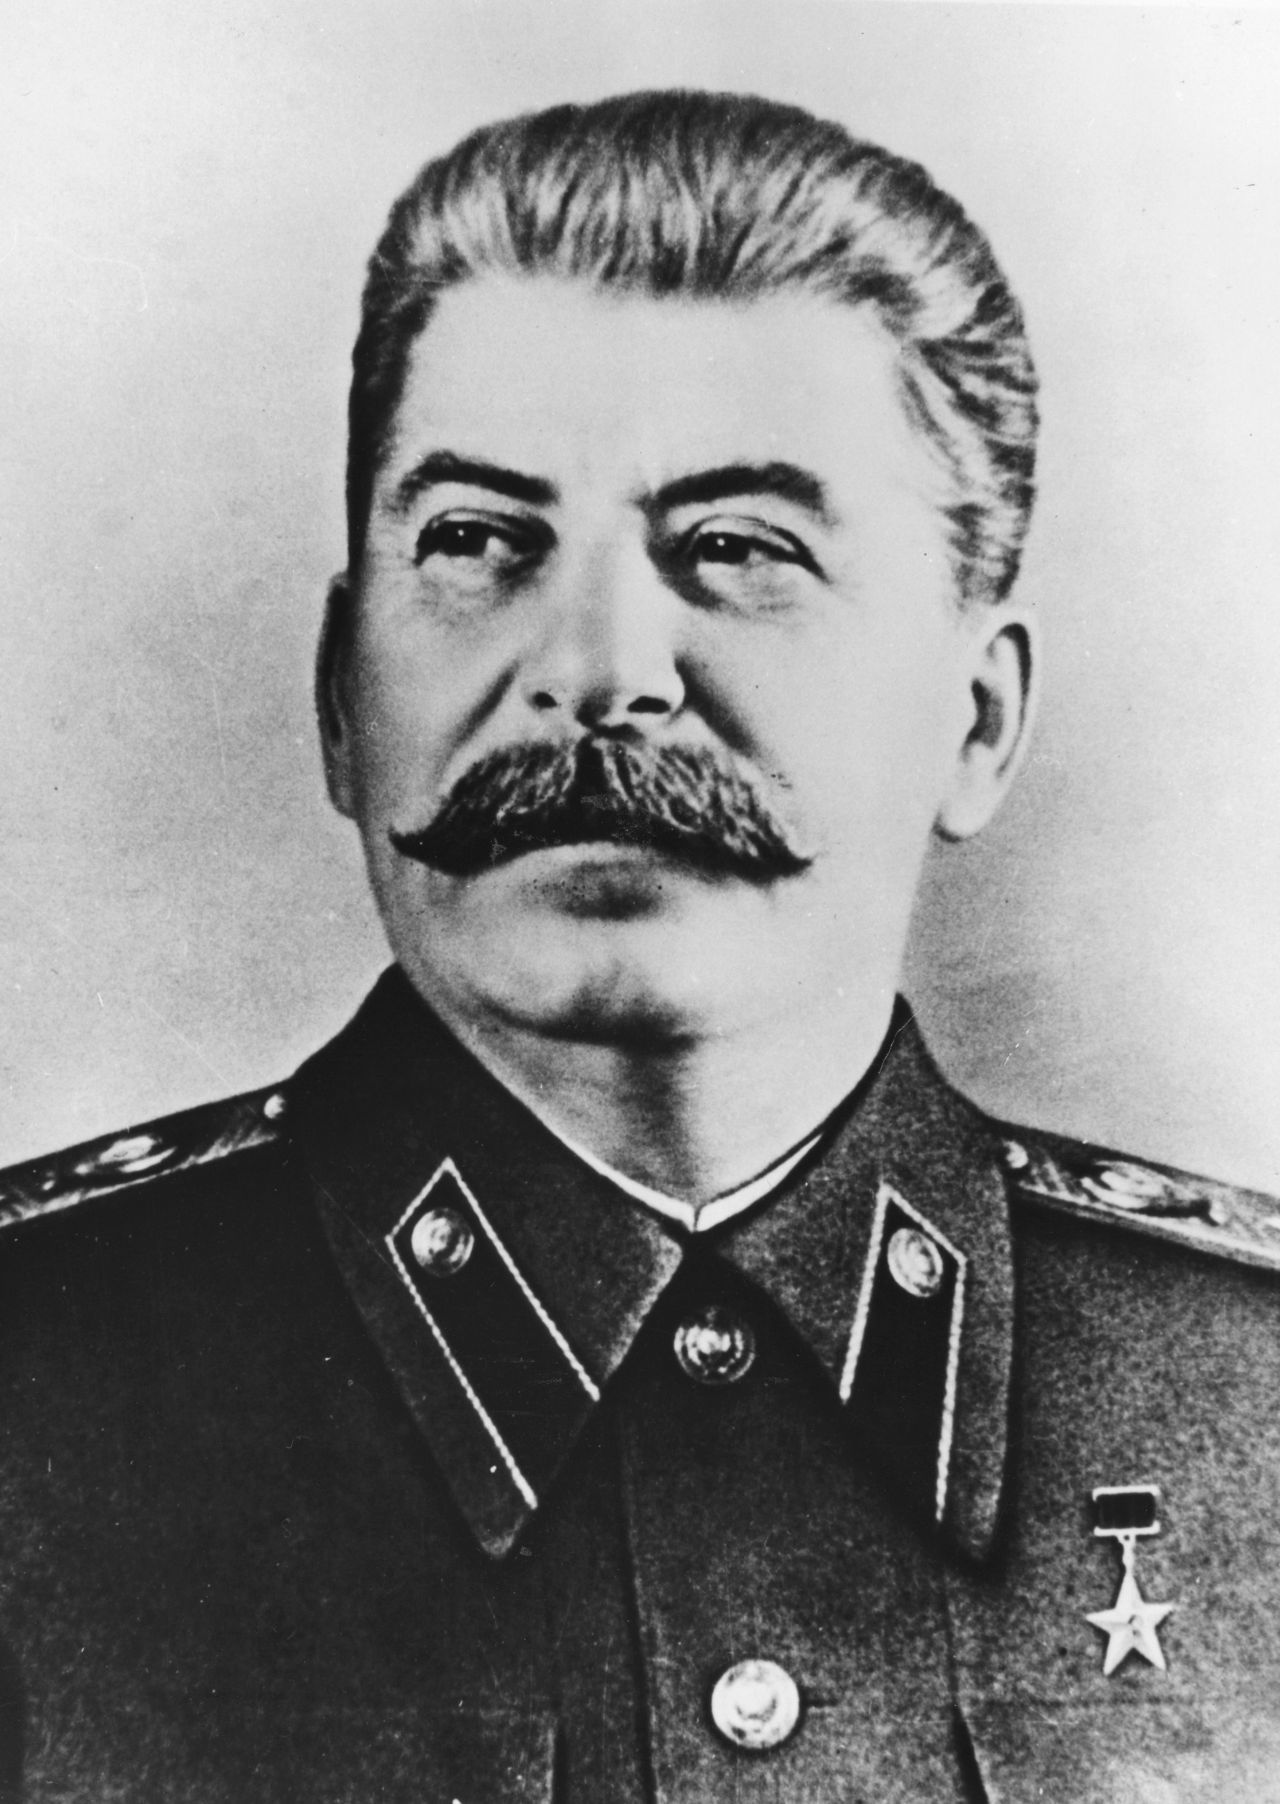 Josef Wissarionowitsch Stalin: geboren 1878 im heutigen Georgien, gestorben 1953 in Russland. Herrschte als totalitärer Diktator von 1927 bis 1953 über die Sowjetunion.